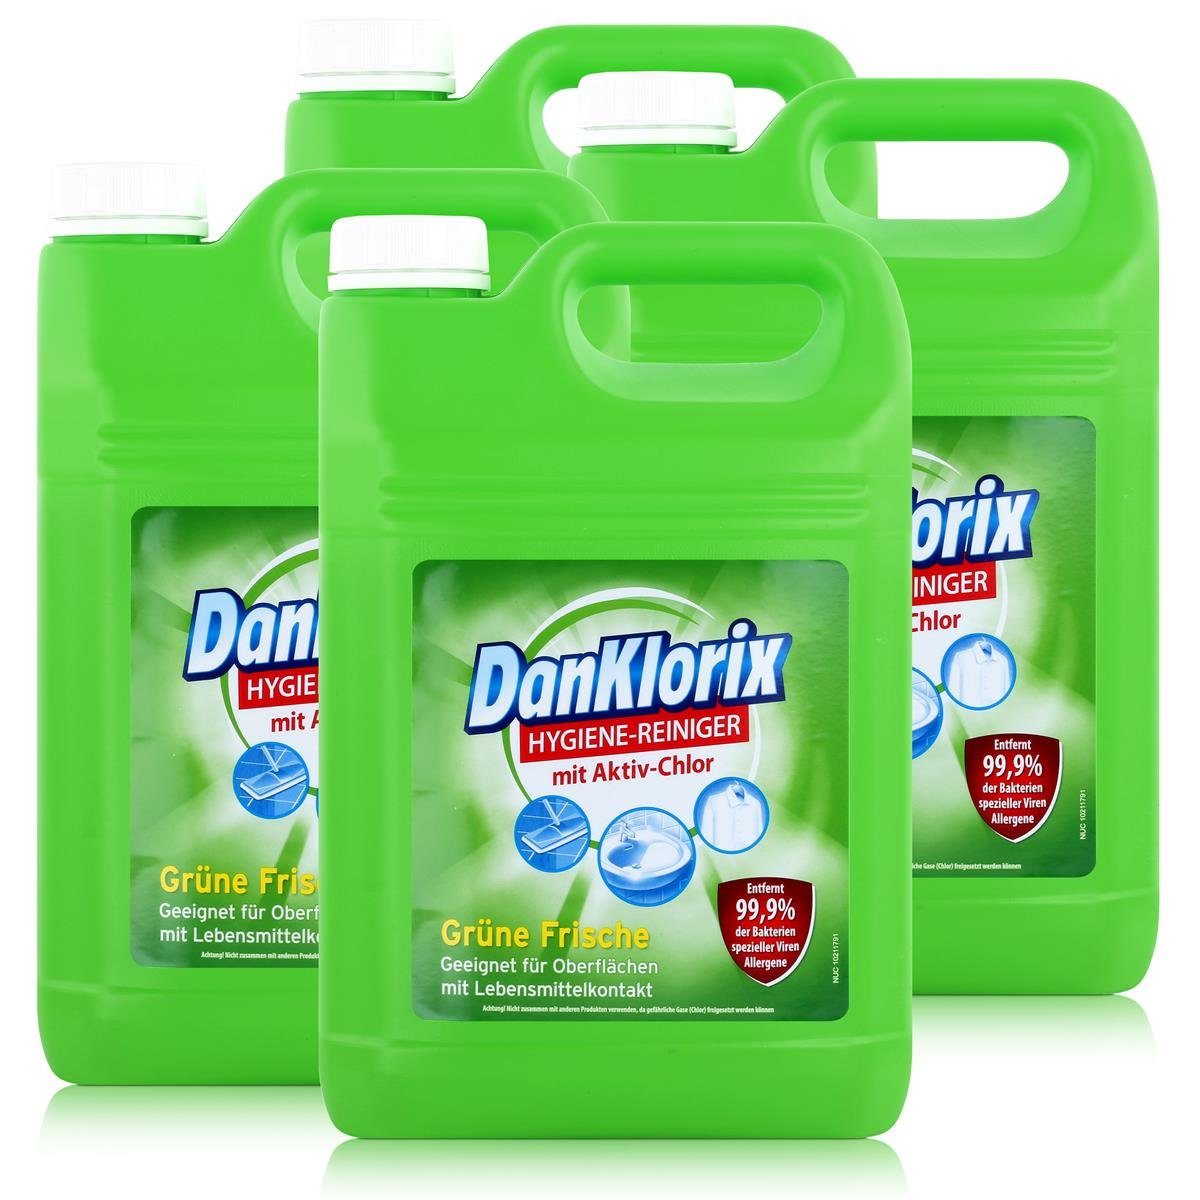 DanKlorix DanKlorix Hygiene-Reiniger grüne Frische mit Aktiv-Chlor 5L (4er Pack) Allzweckreiniger